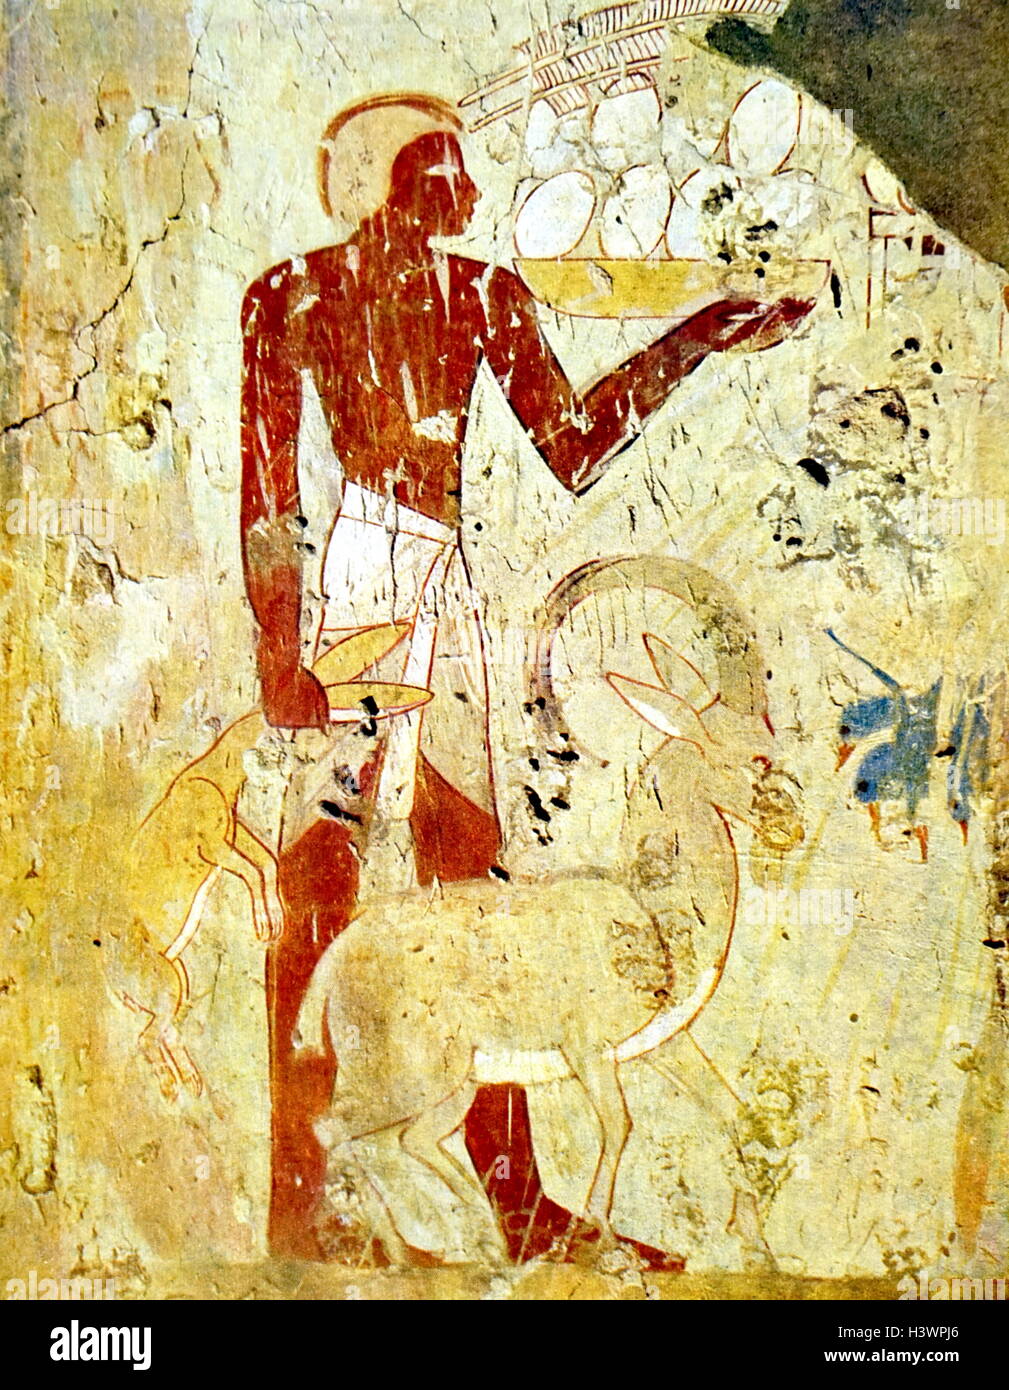 Tomba egizia pittura murale raffigurante sacrifici di animali da Tebe, Luxor. Datata xi secolo A.C. Foto Stock